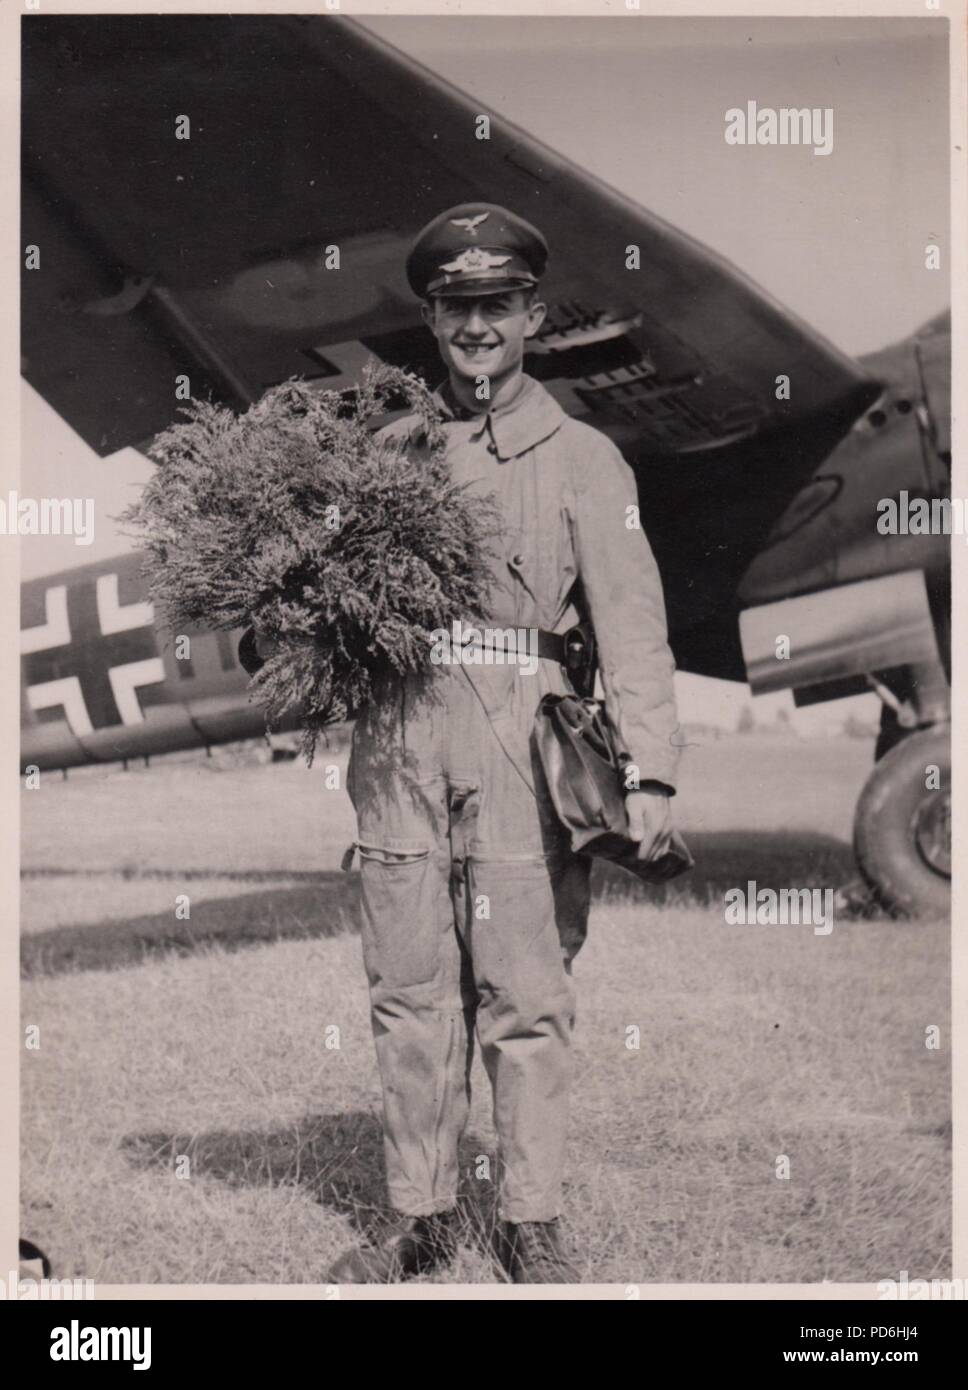 Droit de l'album photo de l'Oberleutnant Oscar Müller de la Kampfgeschwader 1 : Oberfeldwebel Jürgen du 5./KG 1 après avoir effectué 200 missions. Banque D'Images